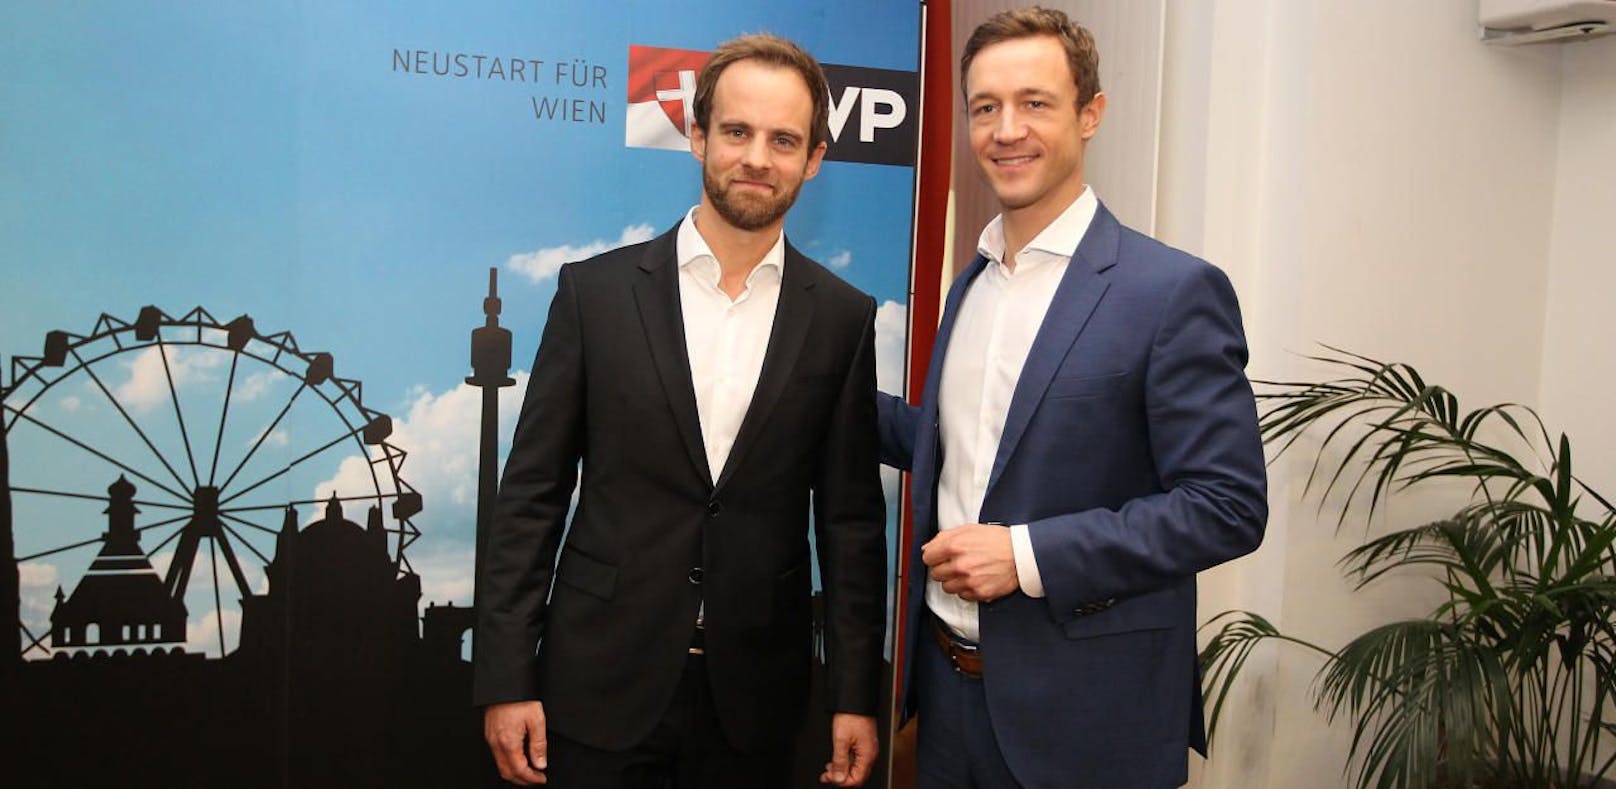 VP-Stadtrat Markus Wölbitsch und Minister Gernot Blümel fordern eine Reform der Mindestsicherung in Wien.